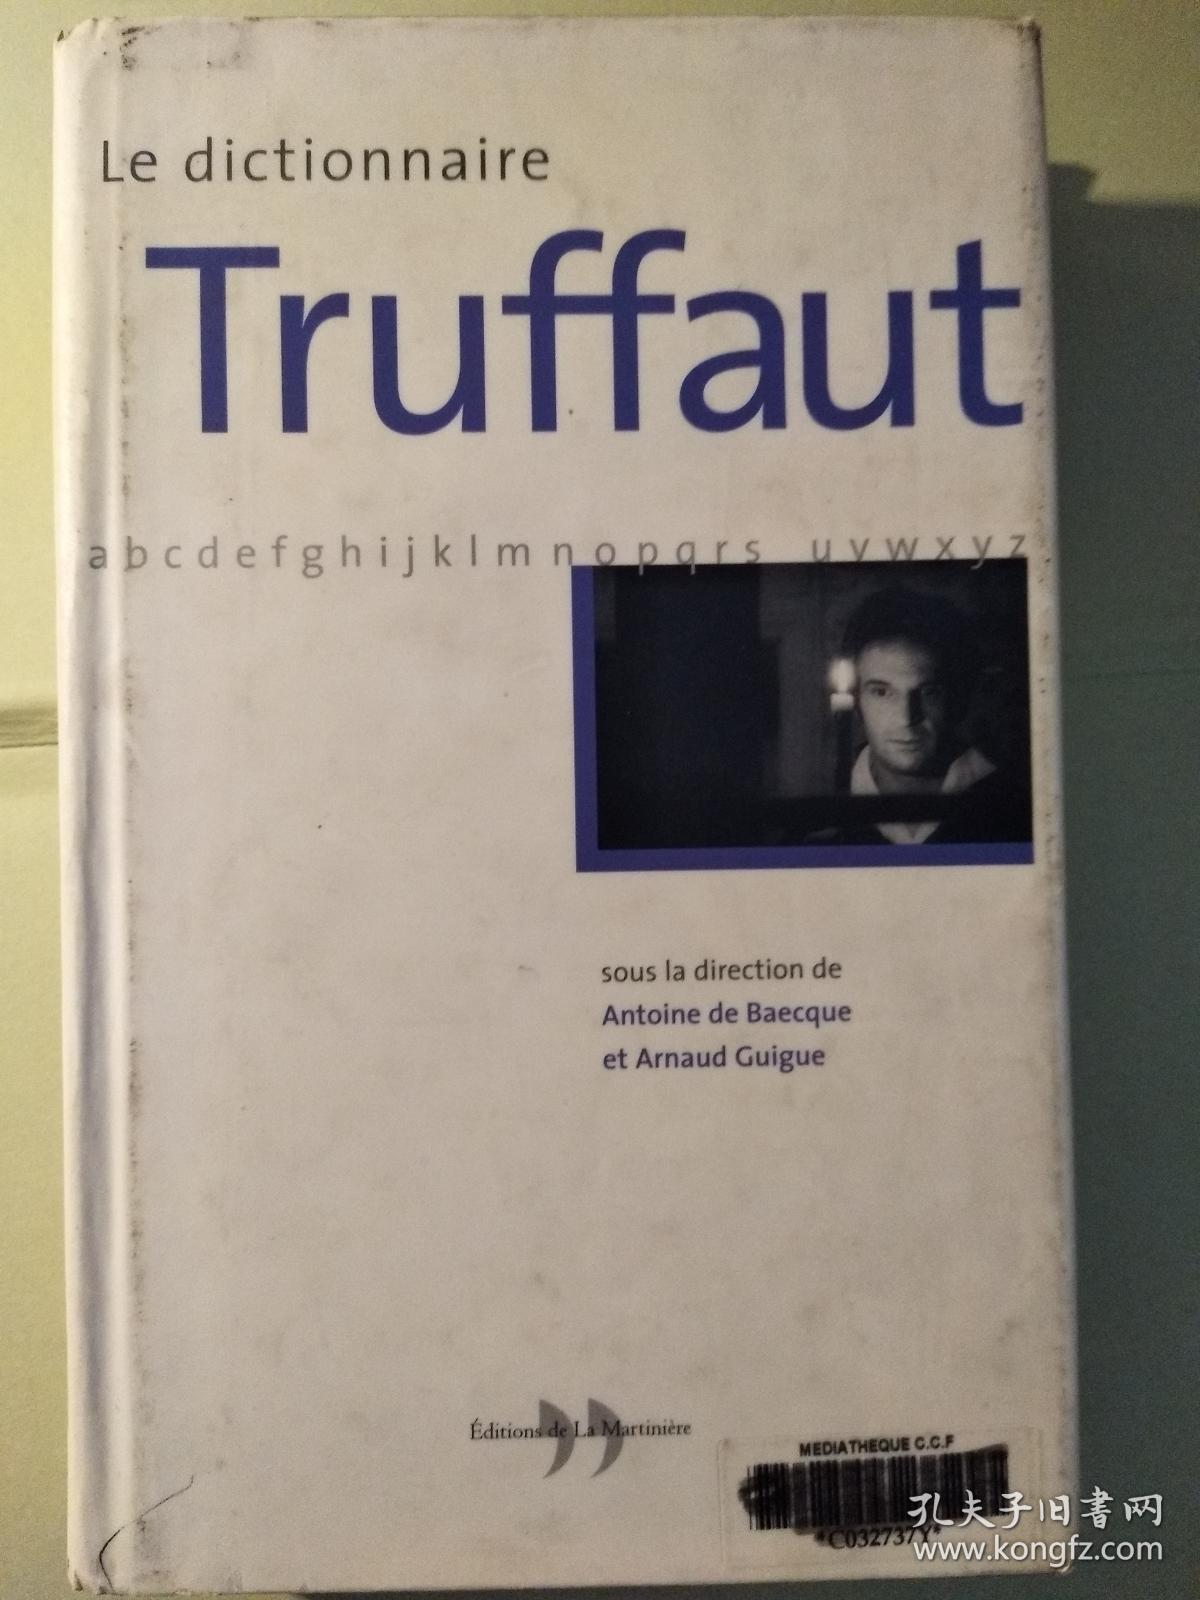 Le dictionnaire Truffaut